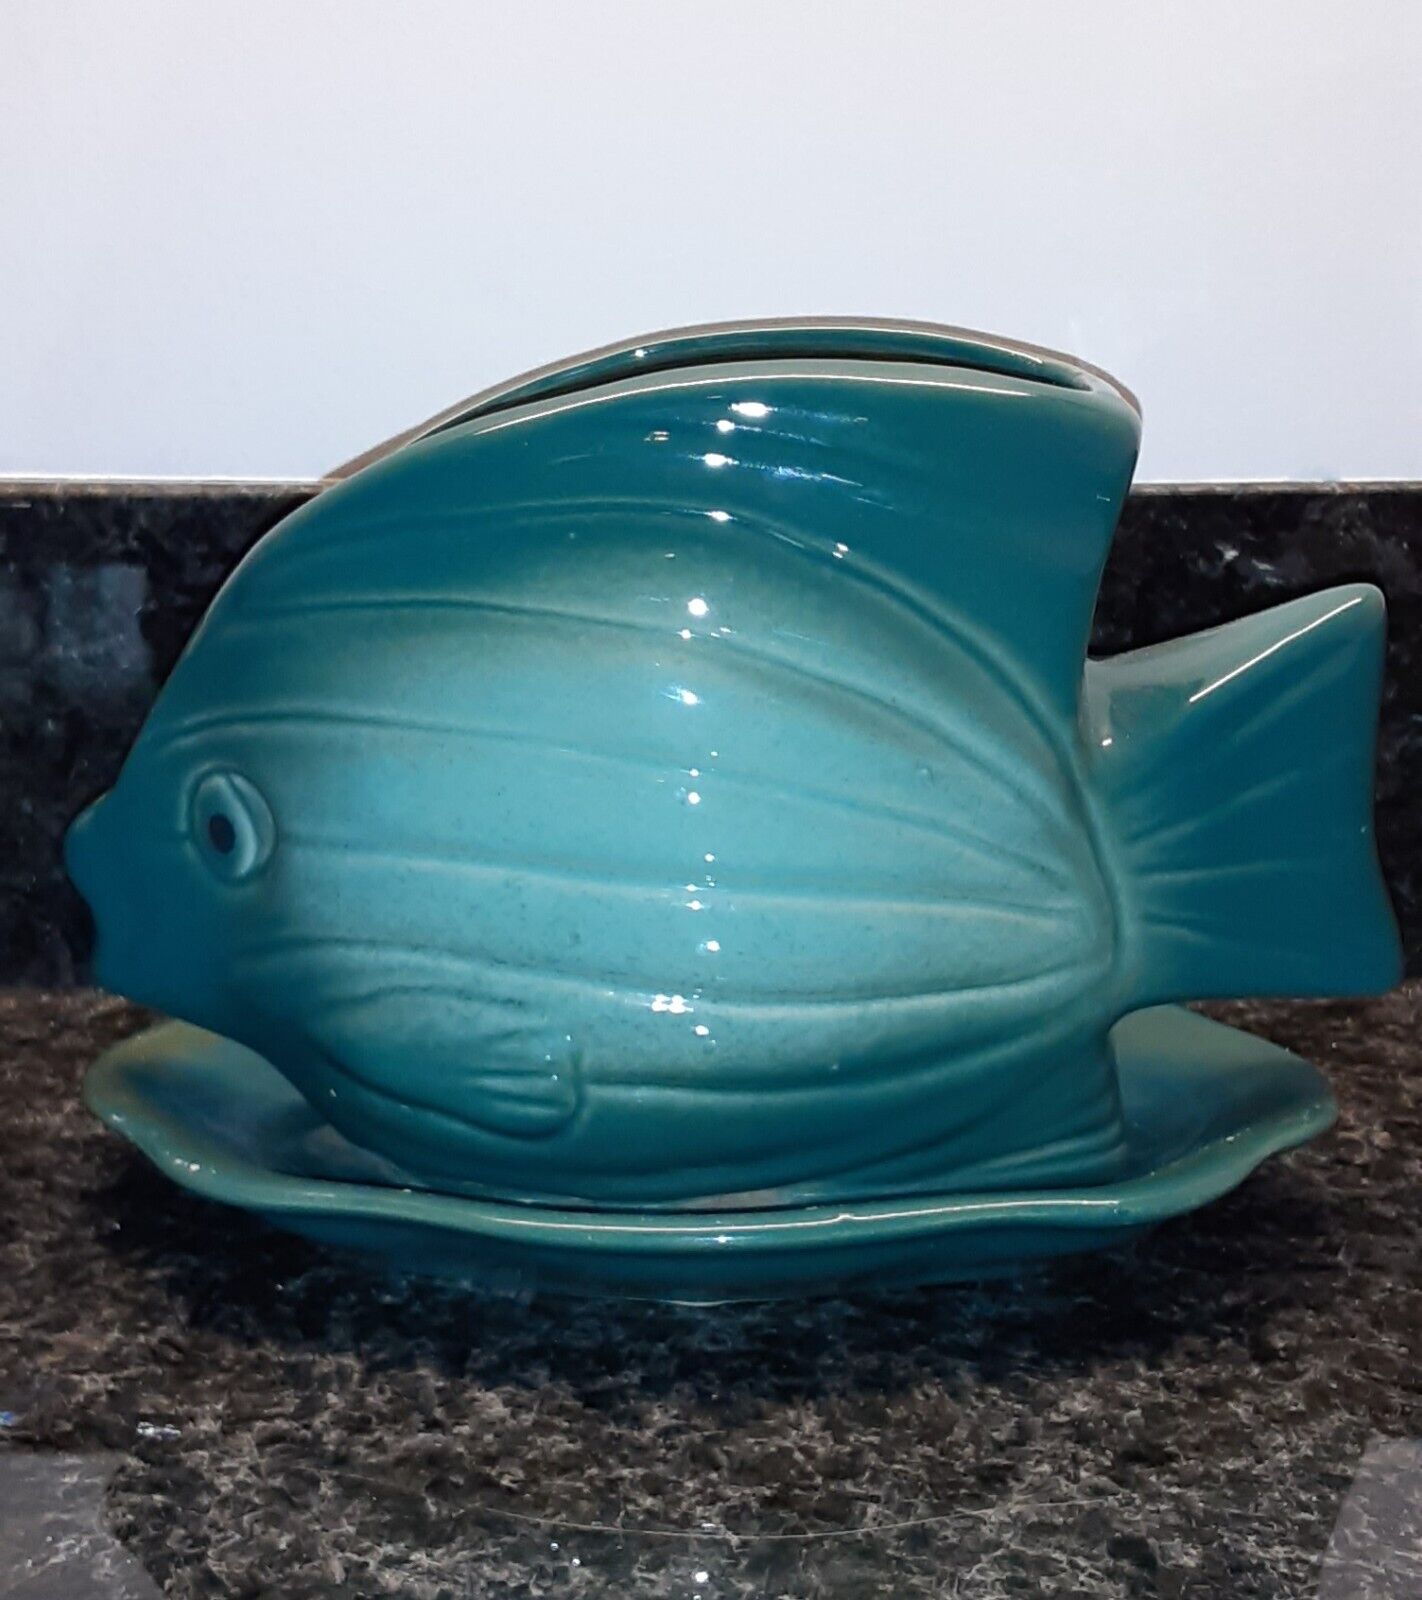 Aquamarine Blue Ceramic Fish Planter - Vintage